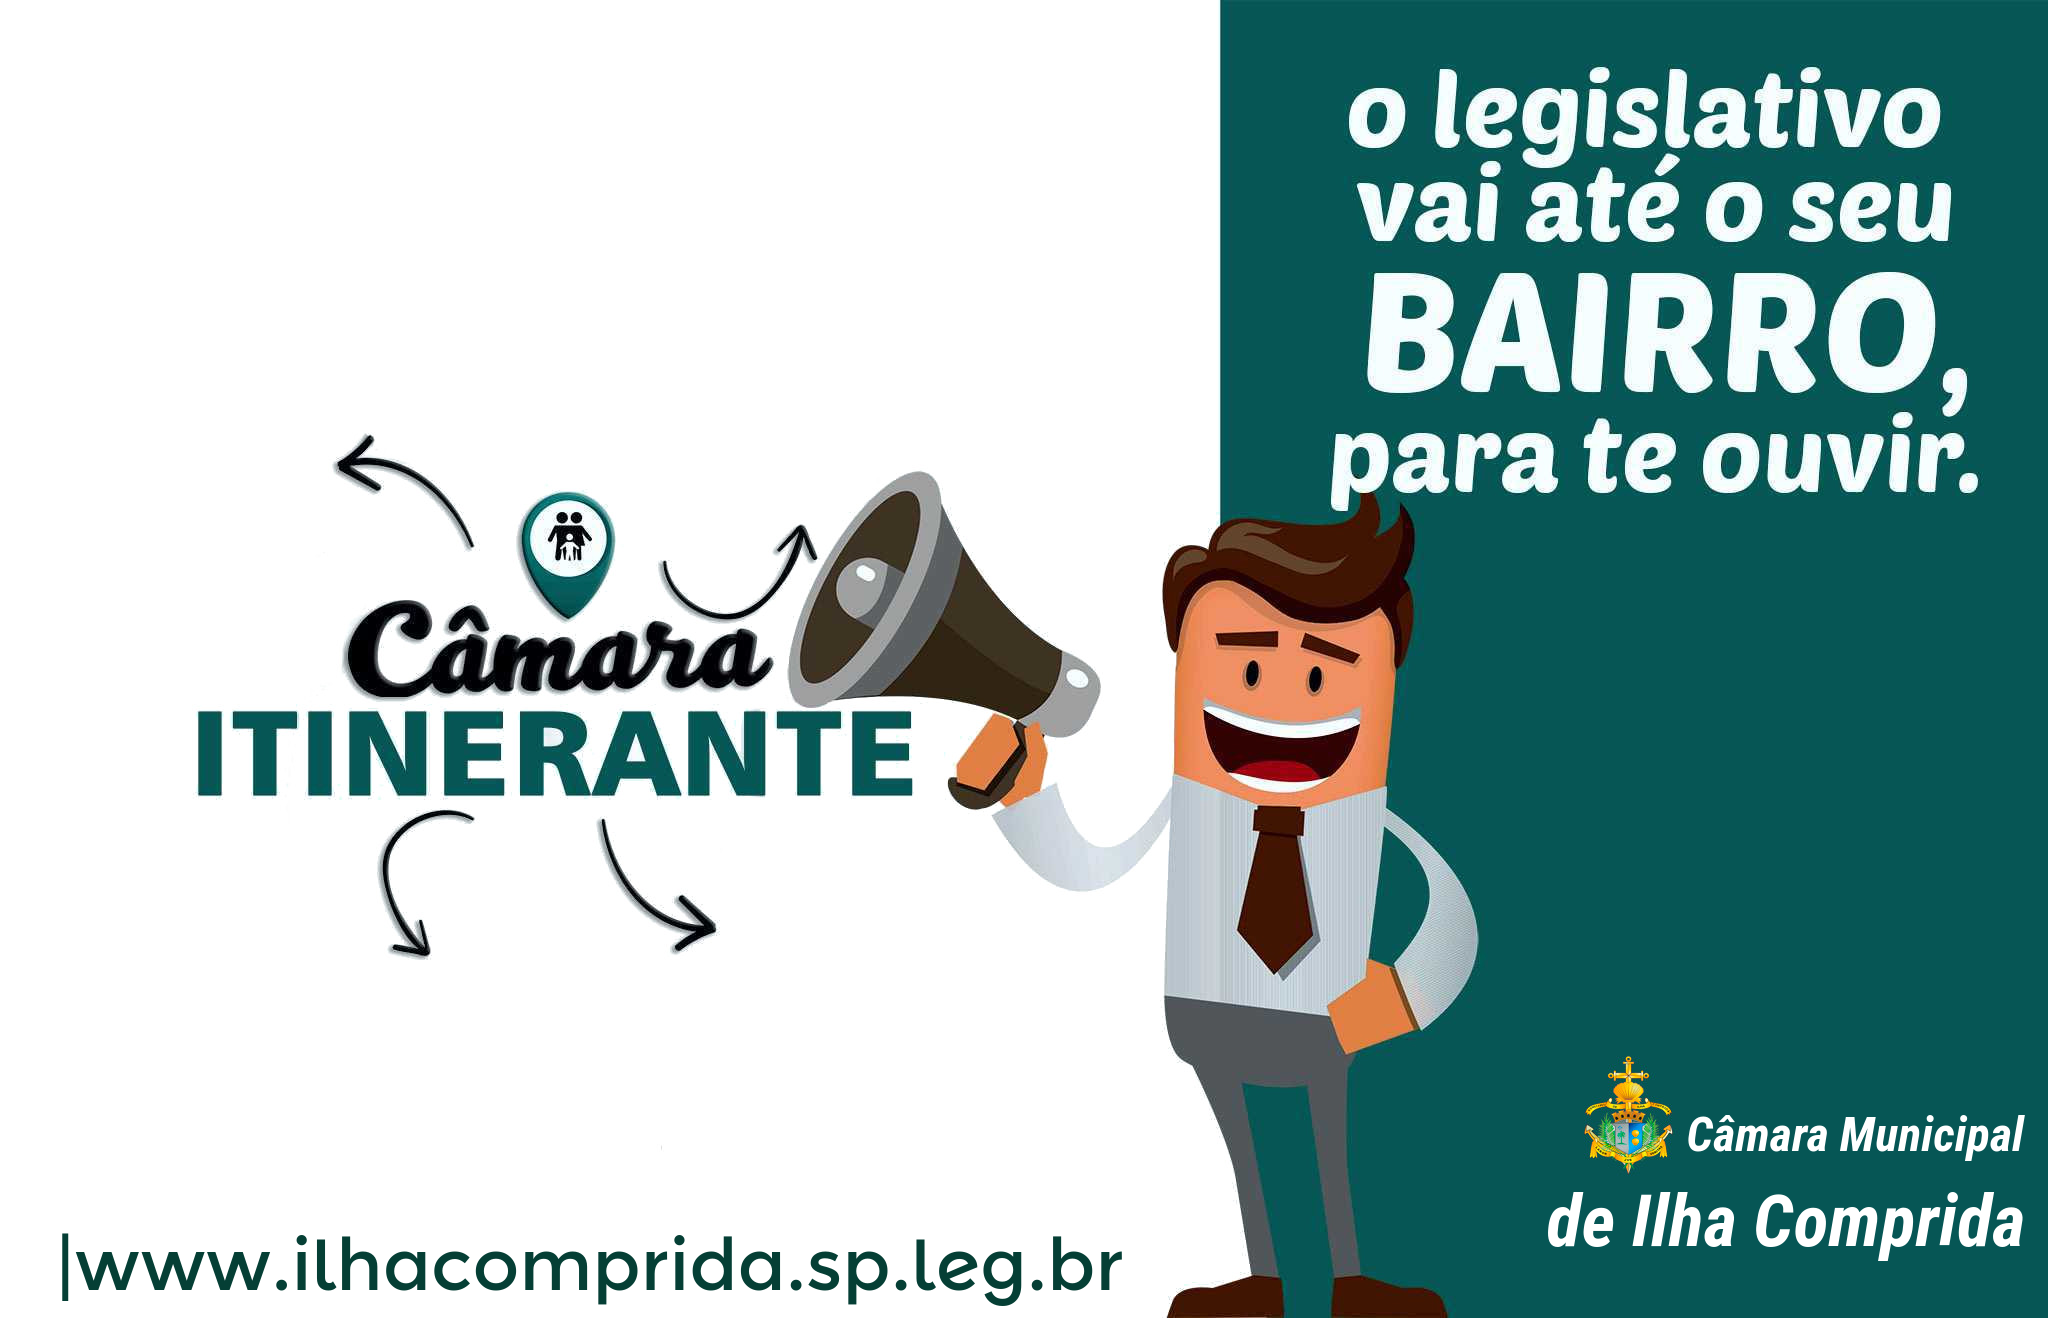 Balneário Araçá receberá a Câmara Itinerante, neste 30/05 (quinta-feira), às 19 h. 